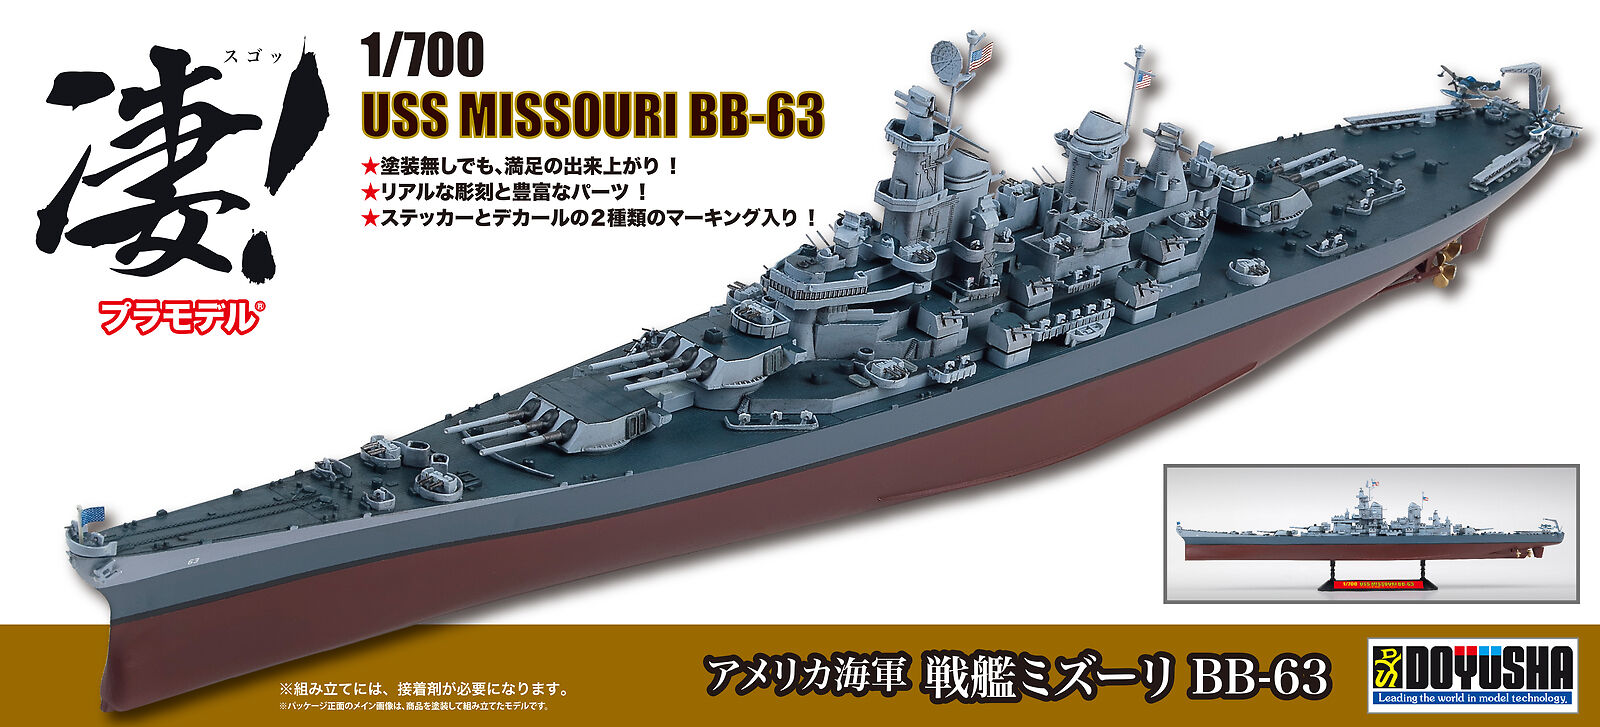 Doyusha 1/700 USS MISSOURI BB-63